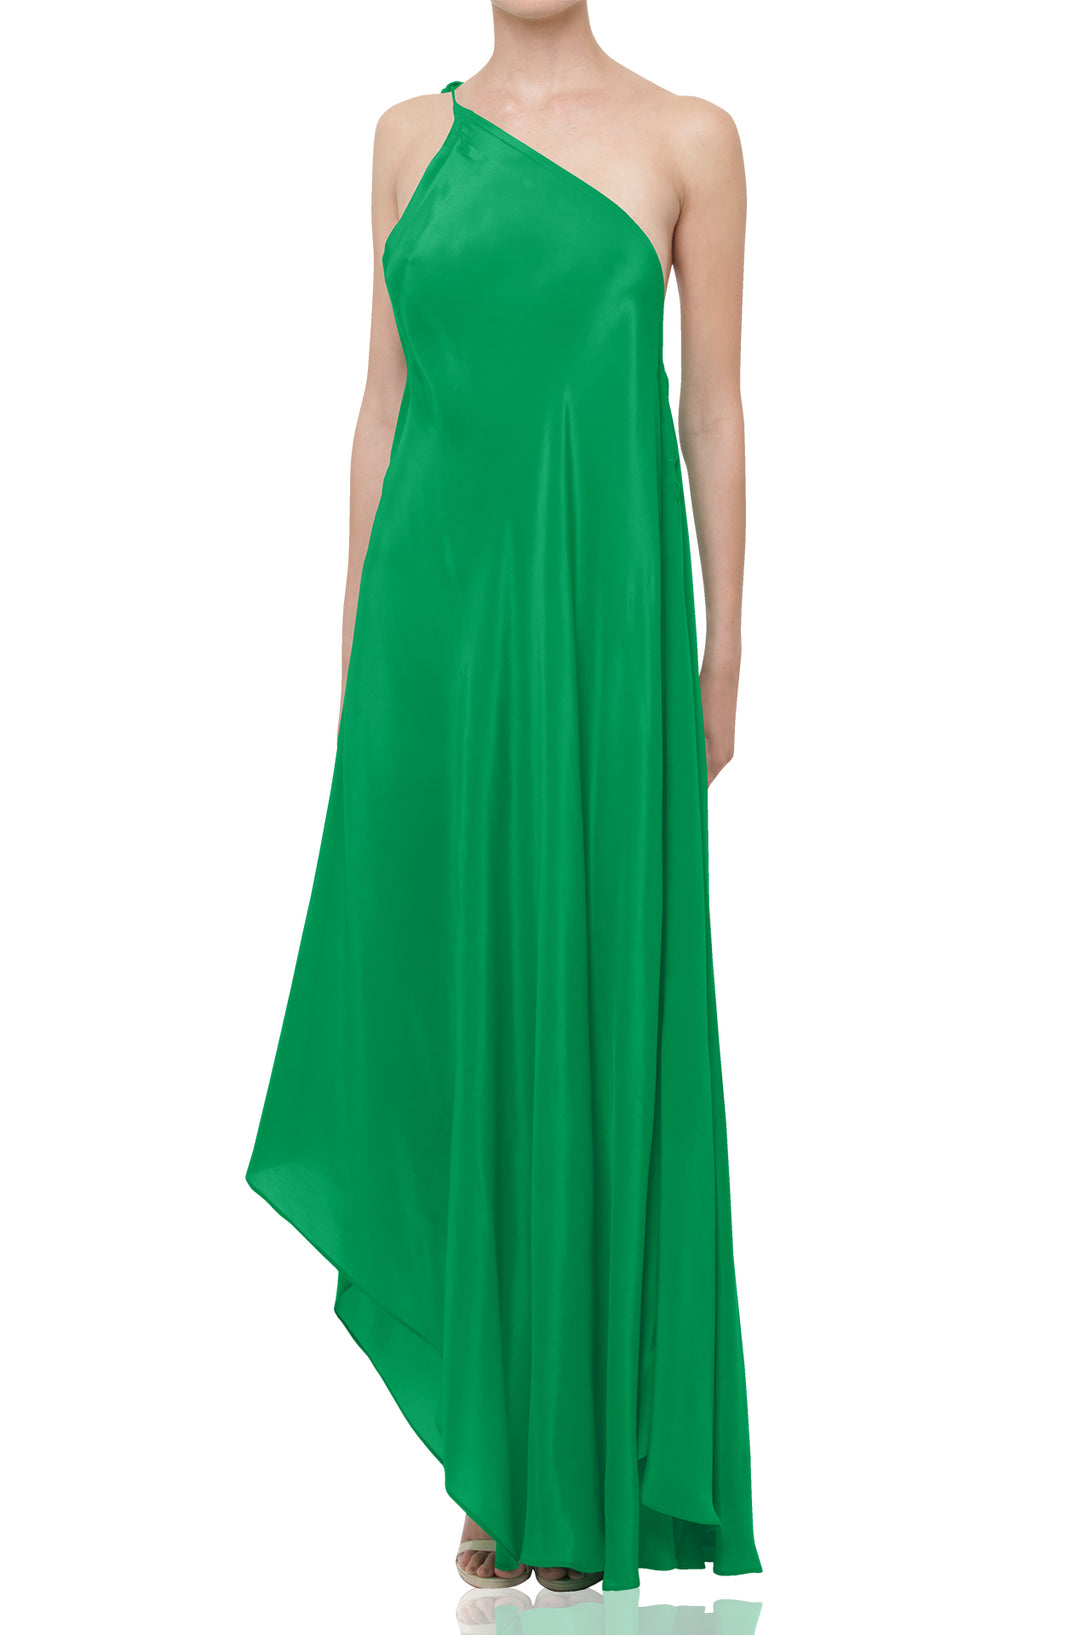  green dress for women, long silk dress, Shahida Parides, halter maxi dress, long flowy dresses,